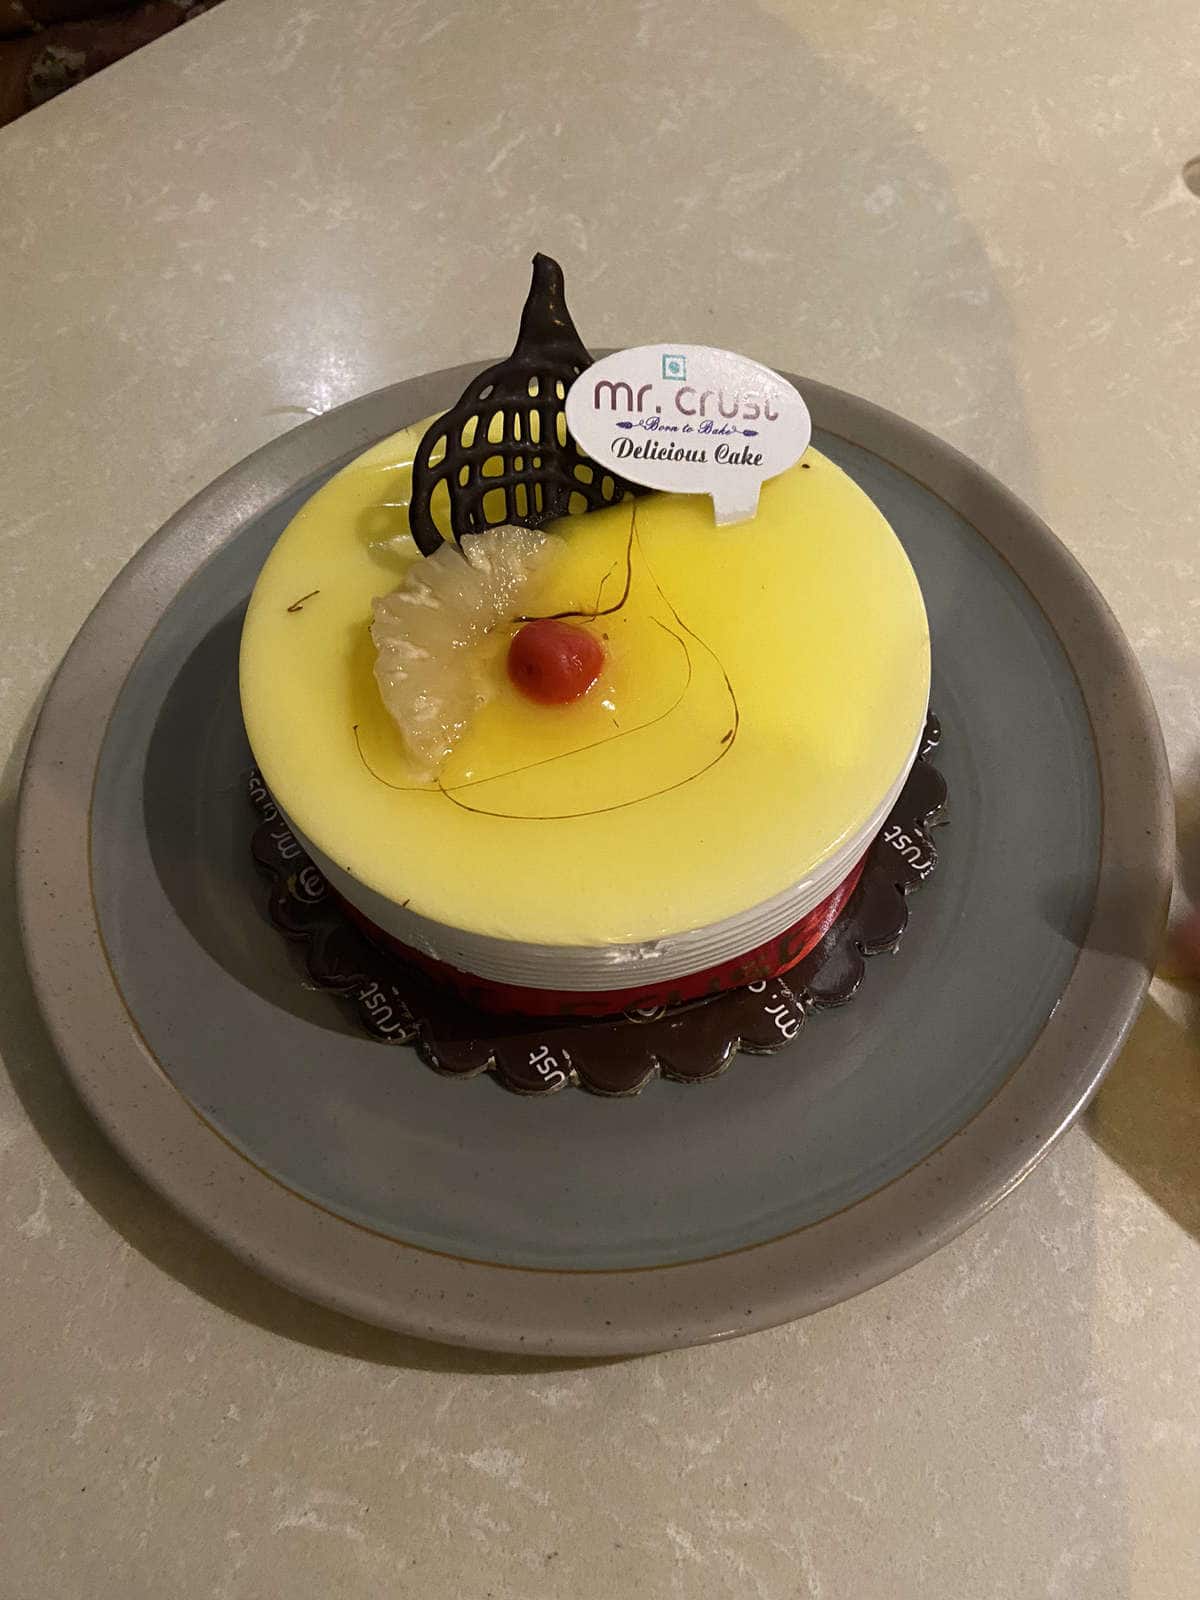 vanilla flavour cake - Picture of Mr. Crust, New Delhi - Tripadvisor